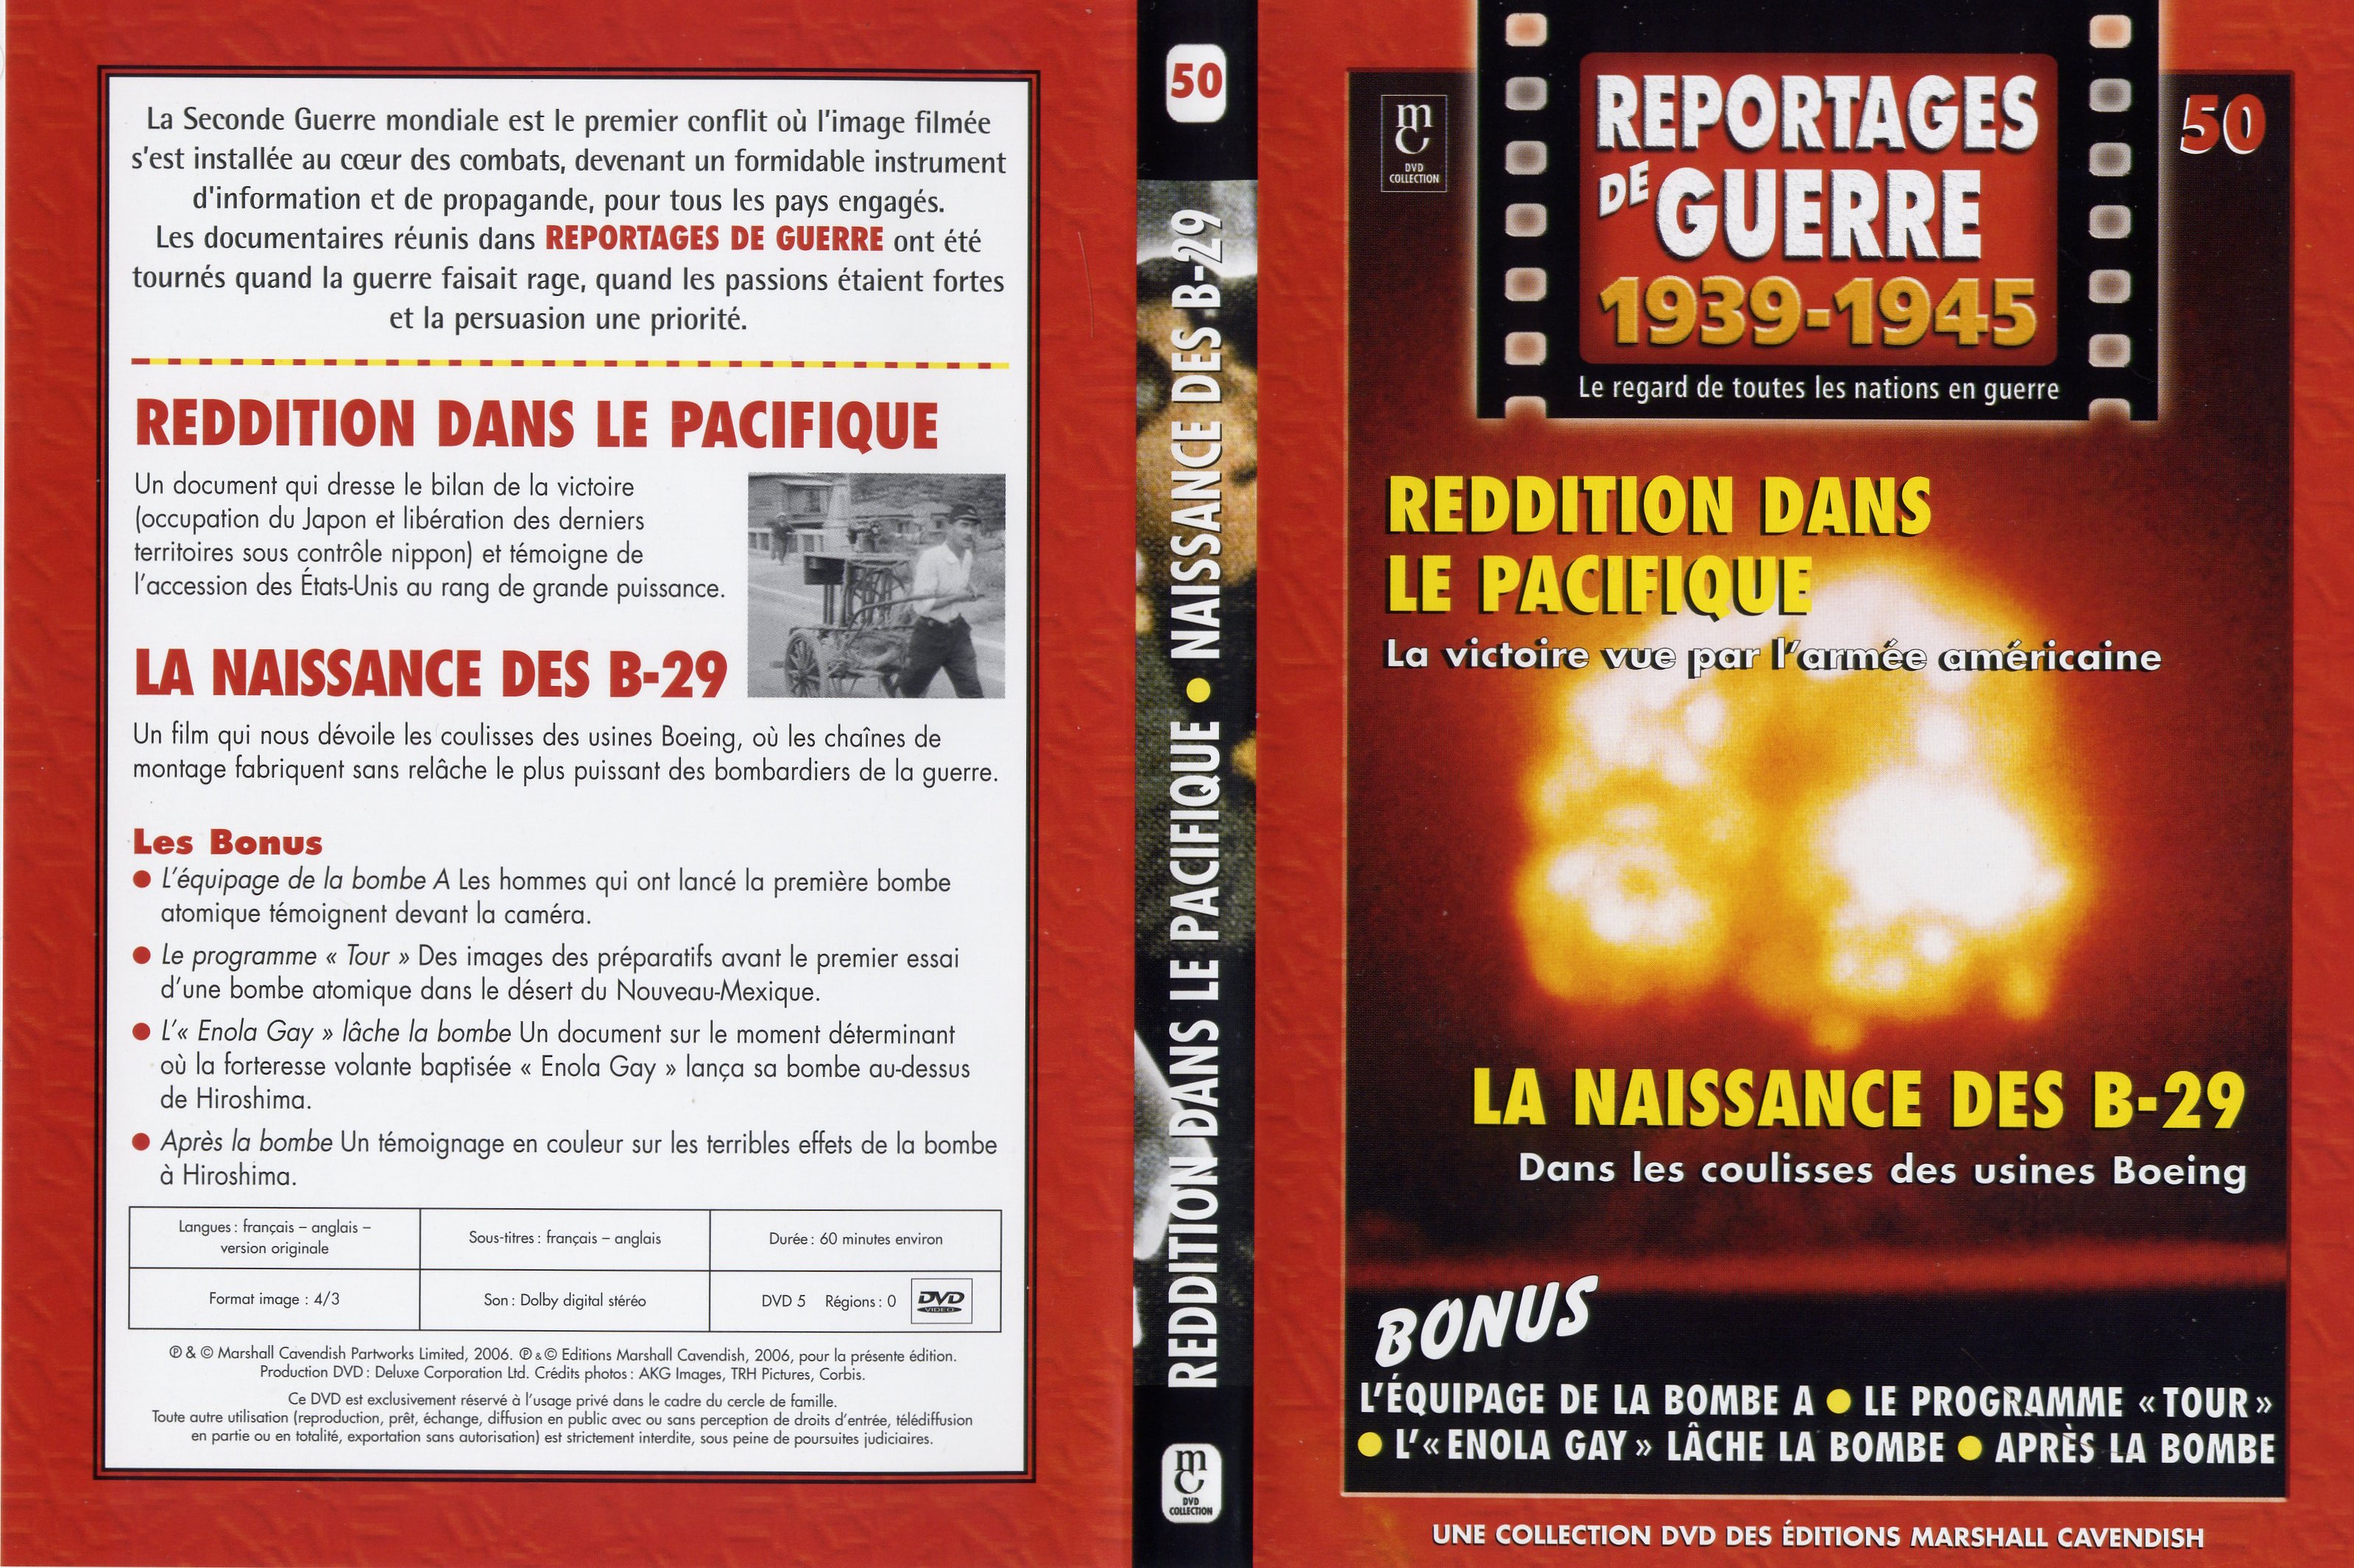 Jaquette DVD Reportages de guerre vol 50